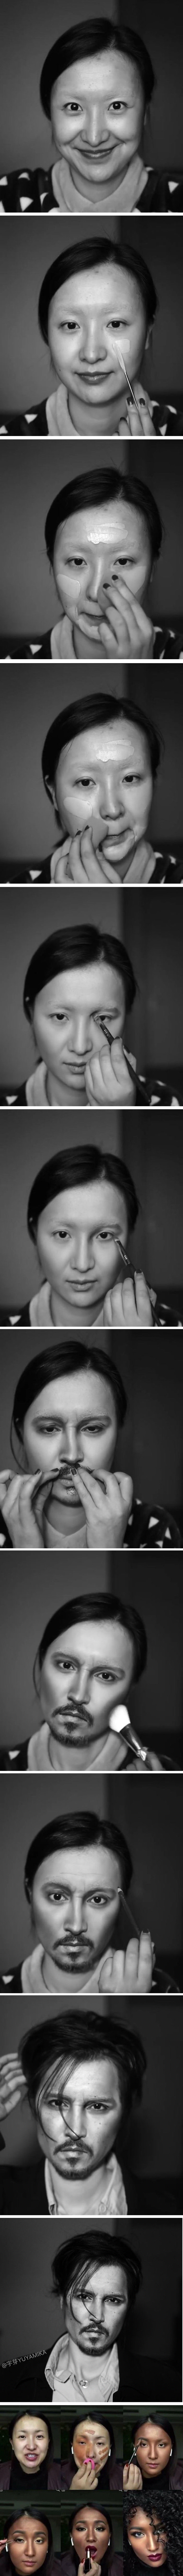 Kineskinja zadivila cijeli svijet nevjerojatnim transformacijama pomoću šminke 